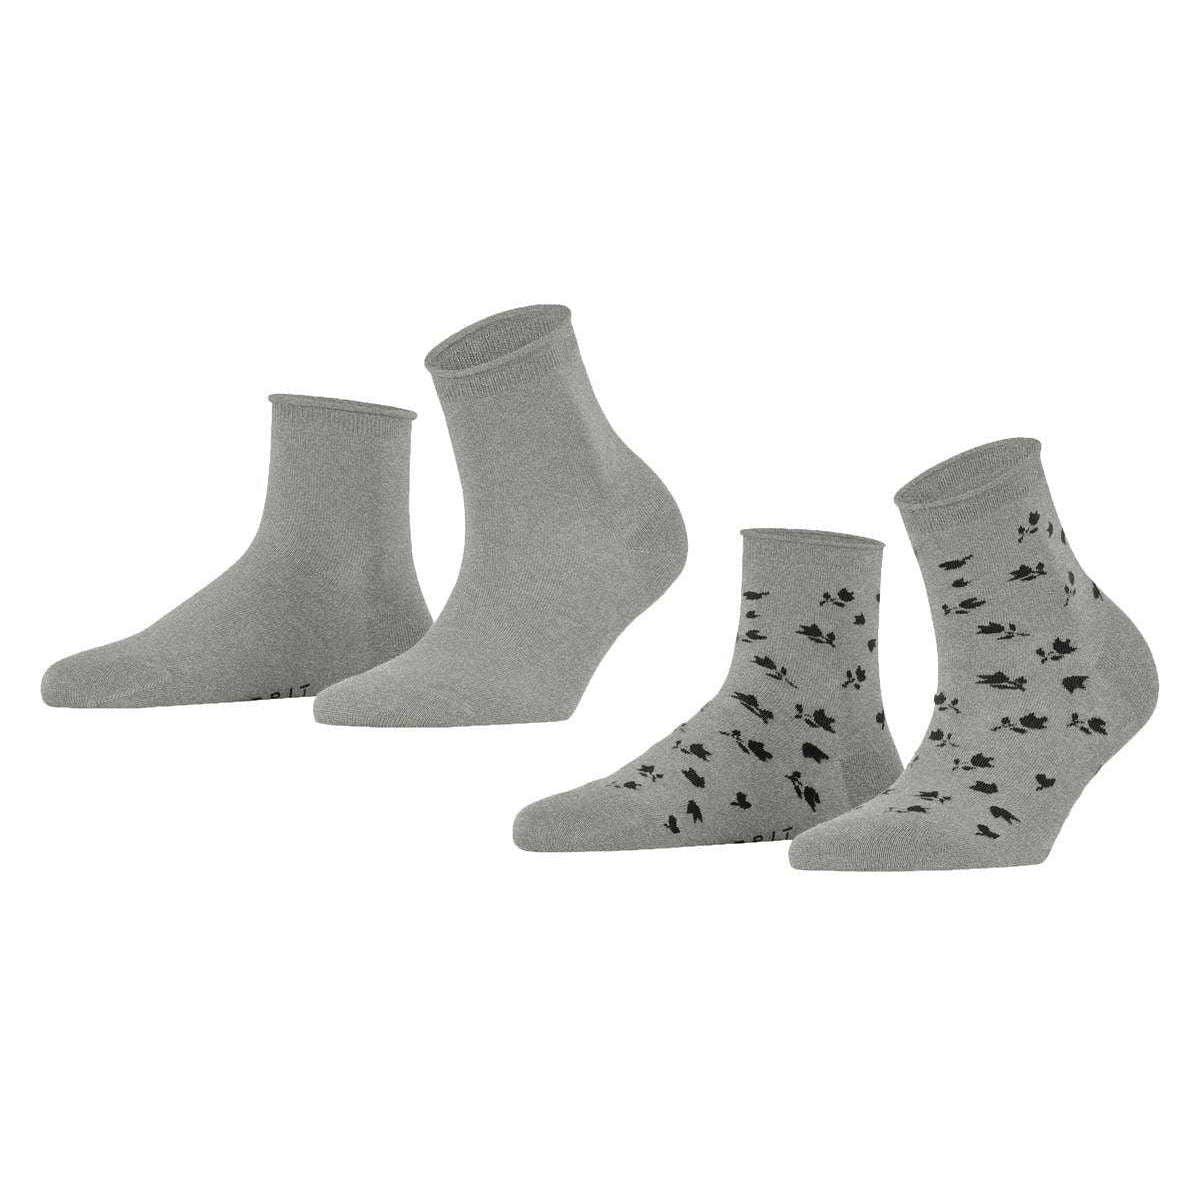 Esprit Mini Flower 2 Pack Socks - Light Grey